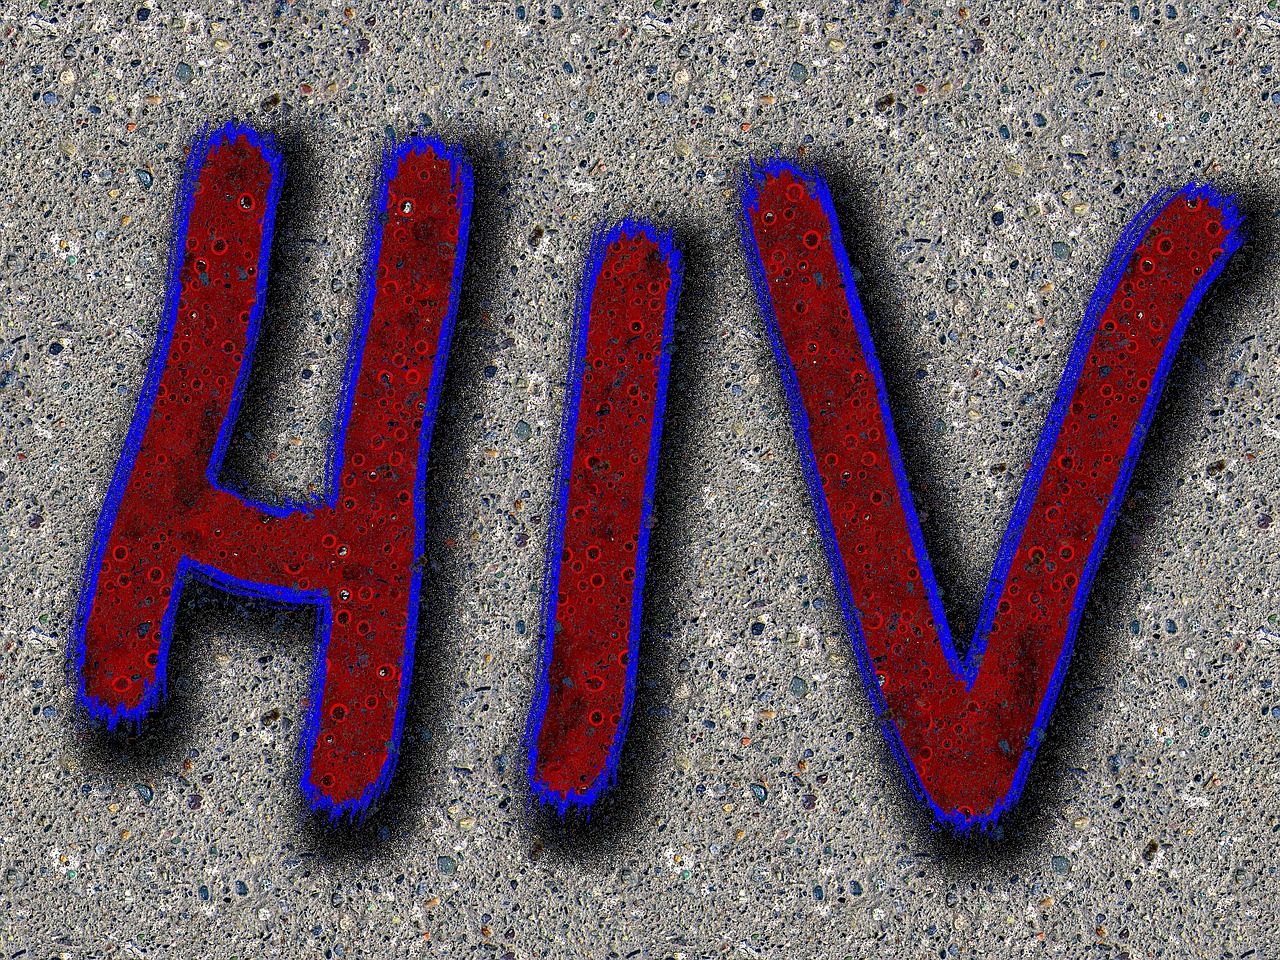 UNOPA cere MS tratament pentru refugiații cu HIV